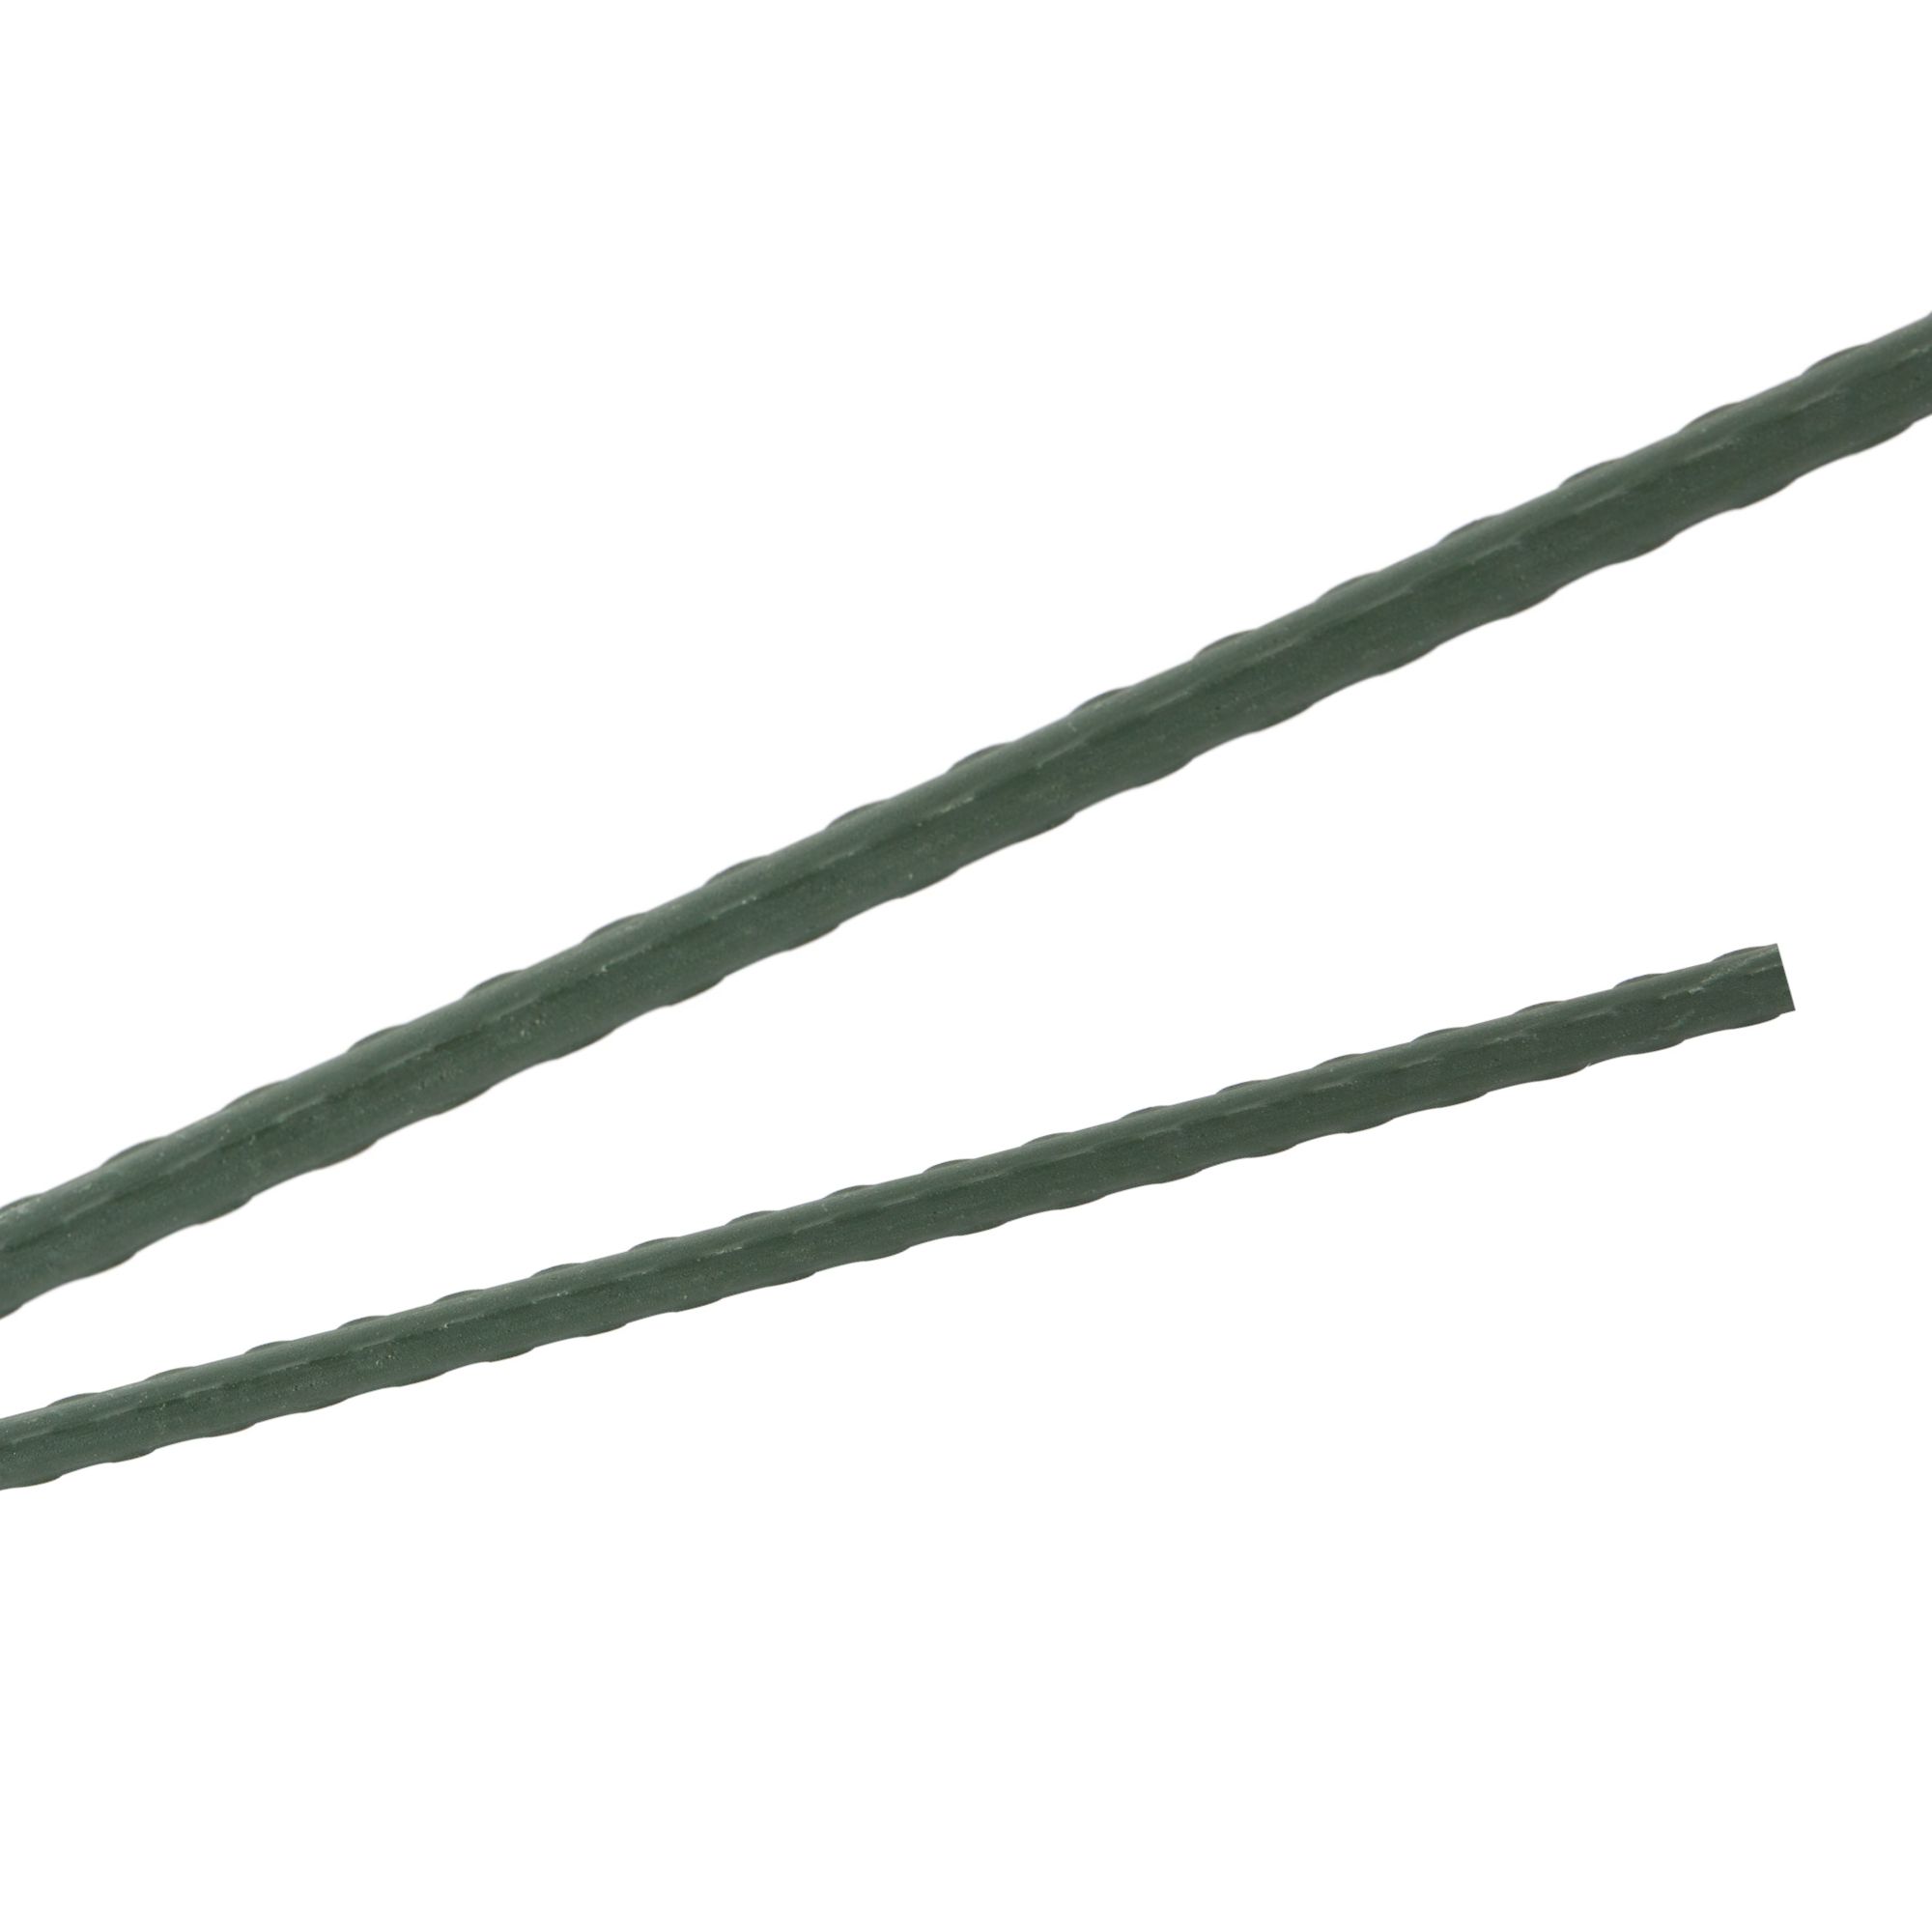 Tyč podpěrná, 8mm, 90cm, kov+PVC, zelená 0.052000 Kg GIGA Sklad20 211783 84